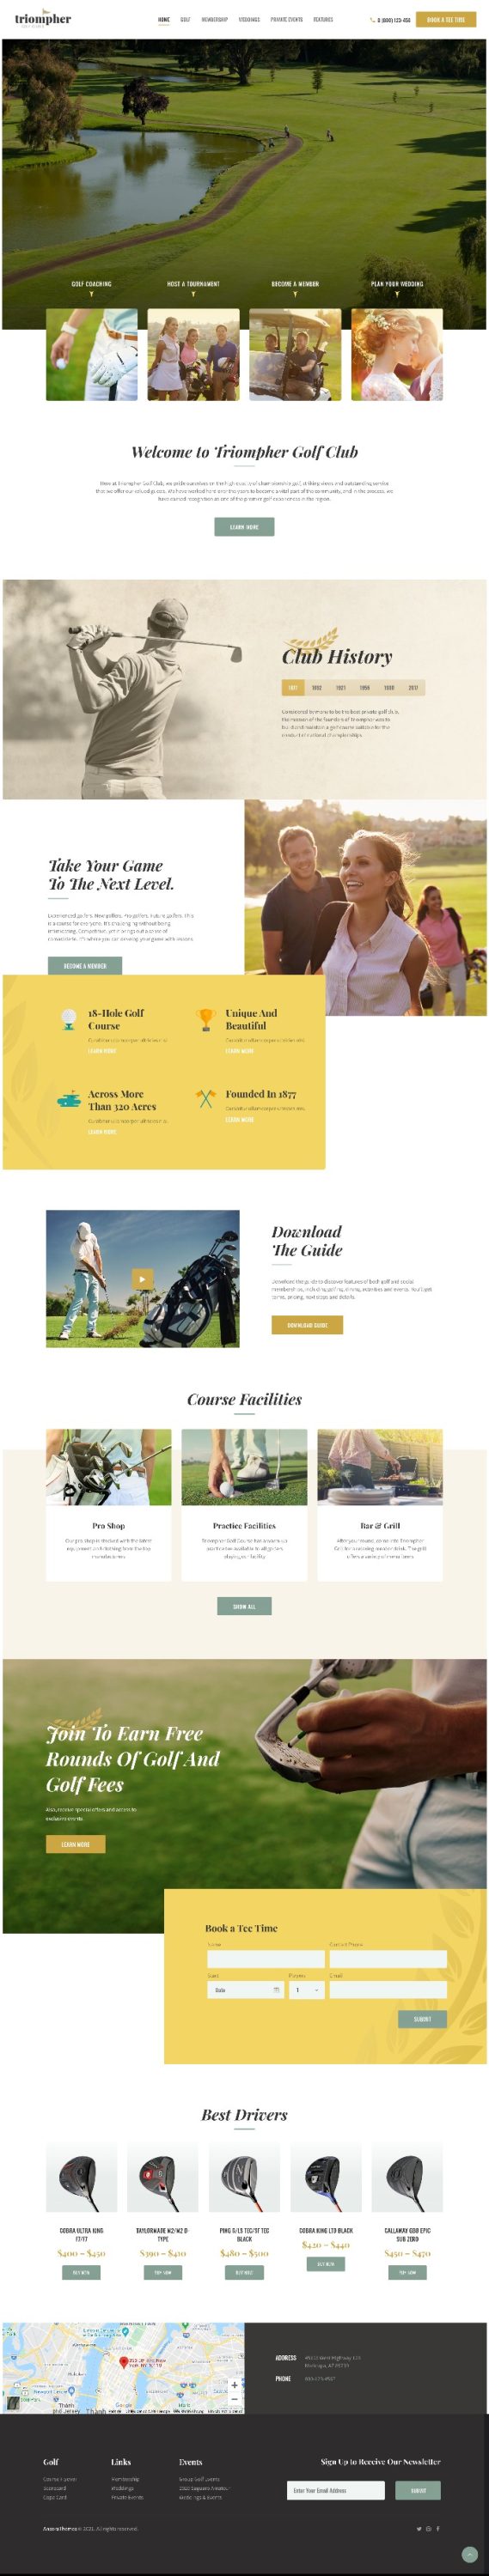 Mẫu Website Giới Thiệu Dịch Vụ Golf Triompher